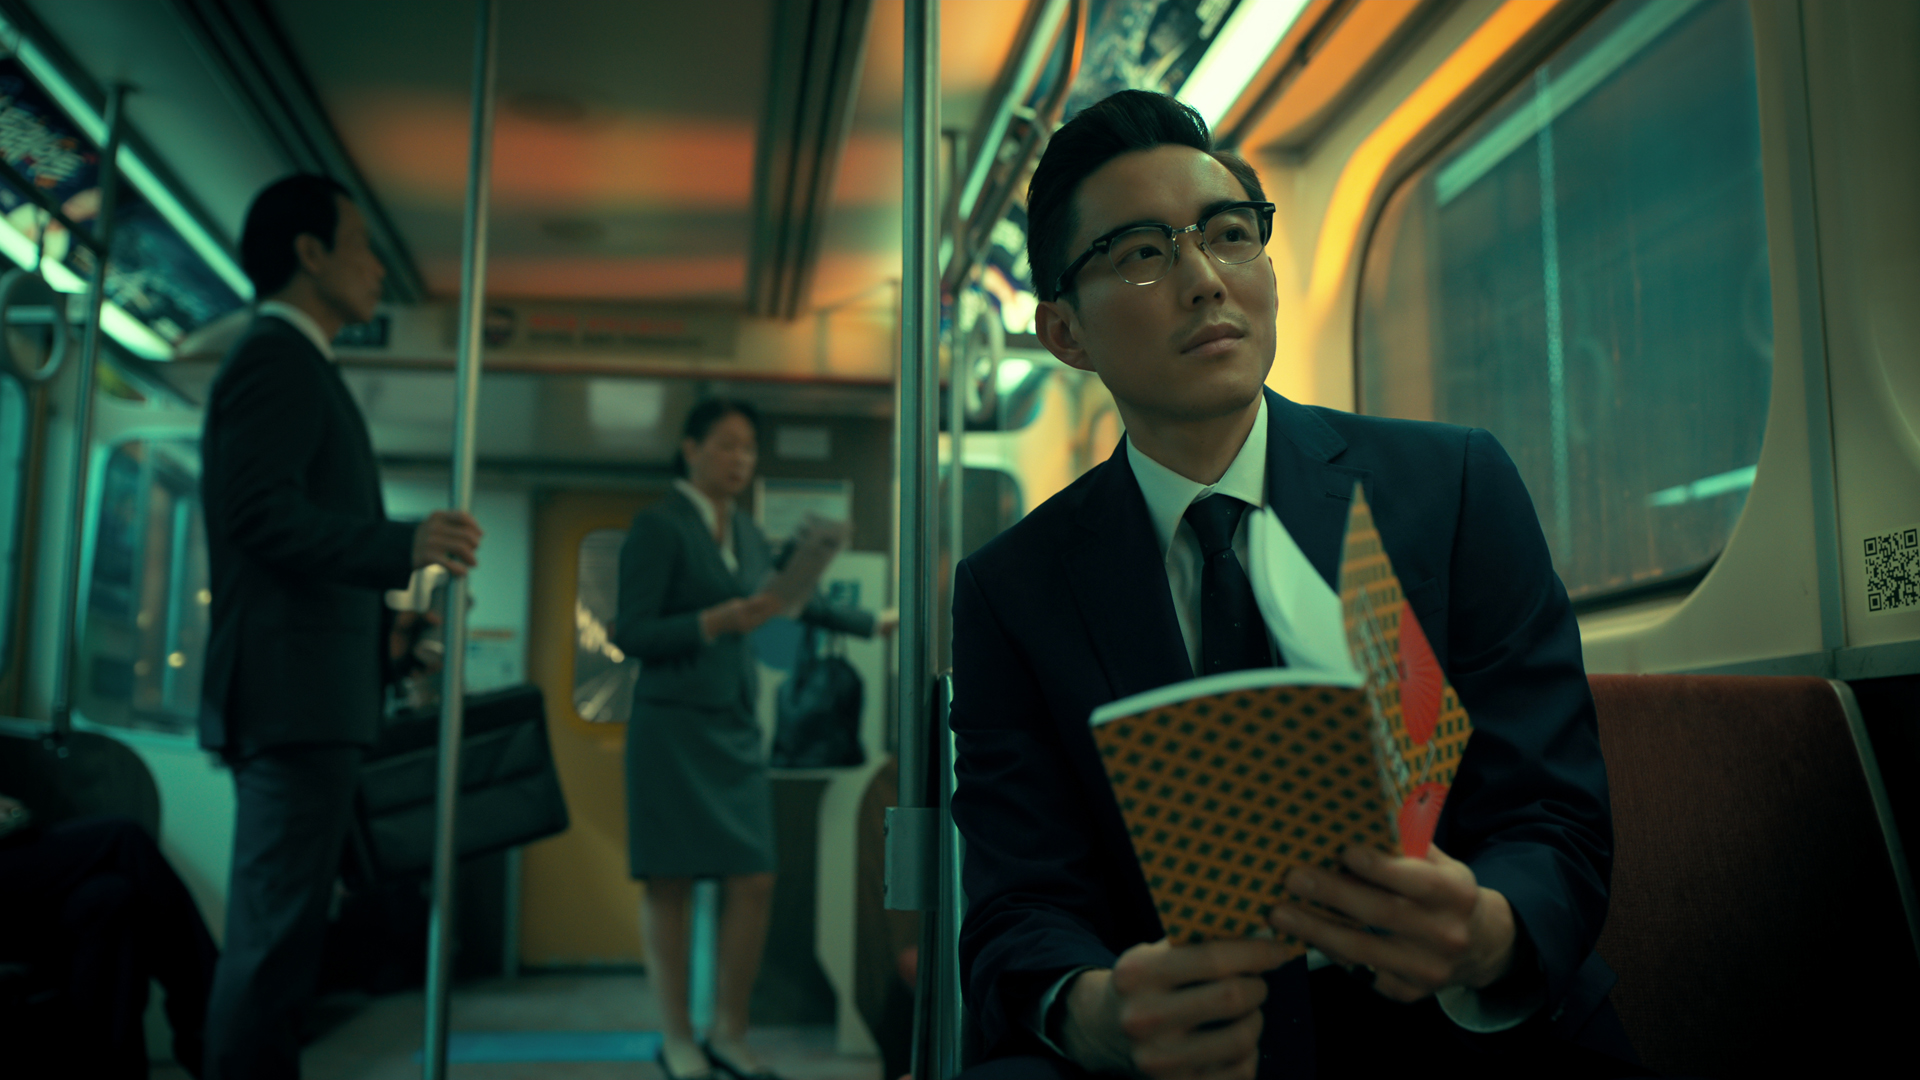 بن هارگریوز در قطار مترو در فصل سوم The Umbrella Academy شعر می خواند